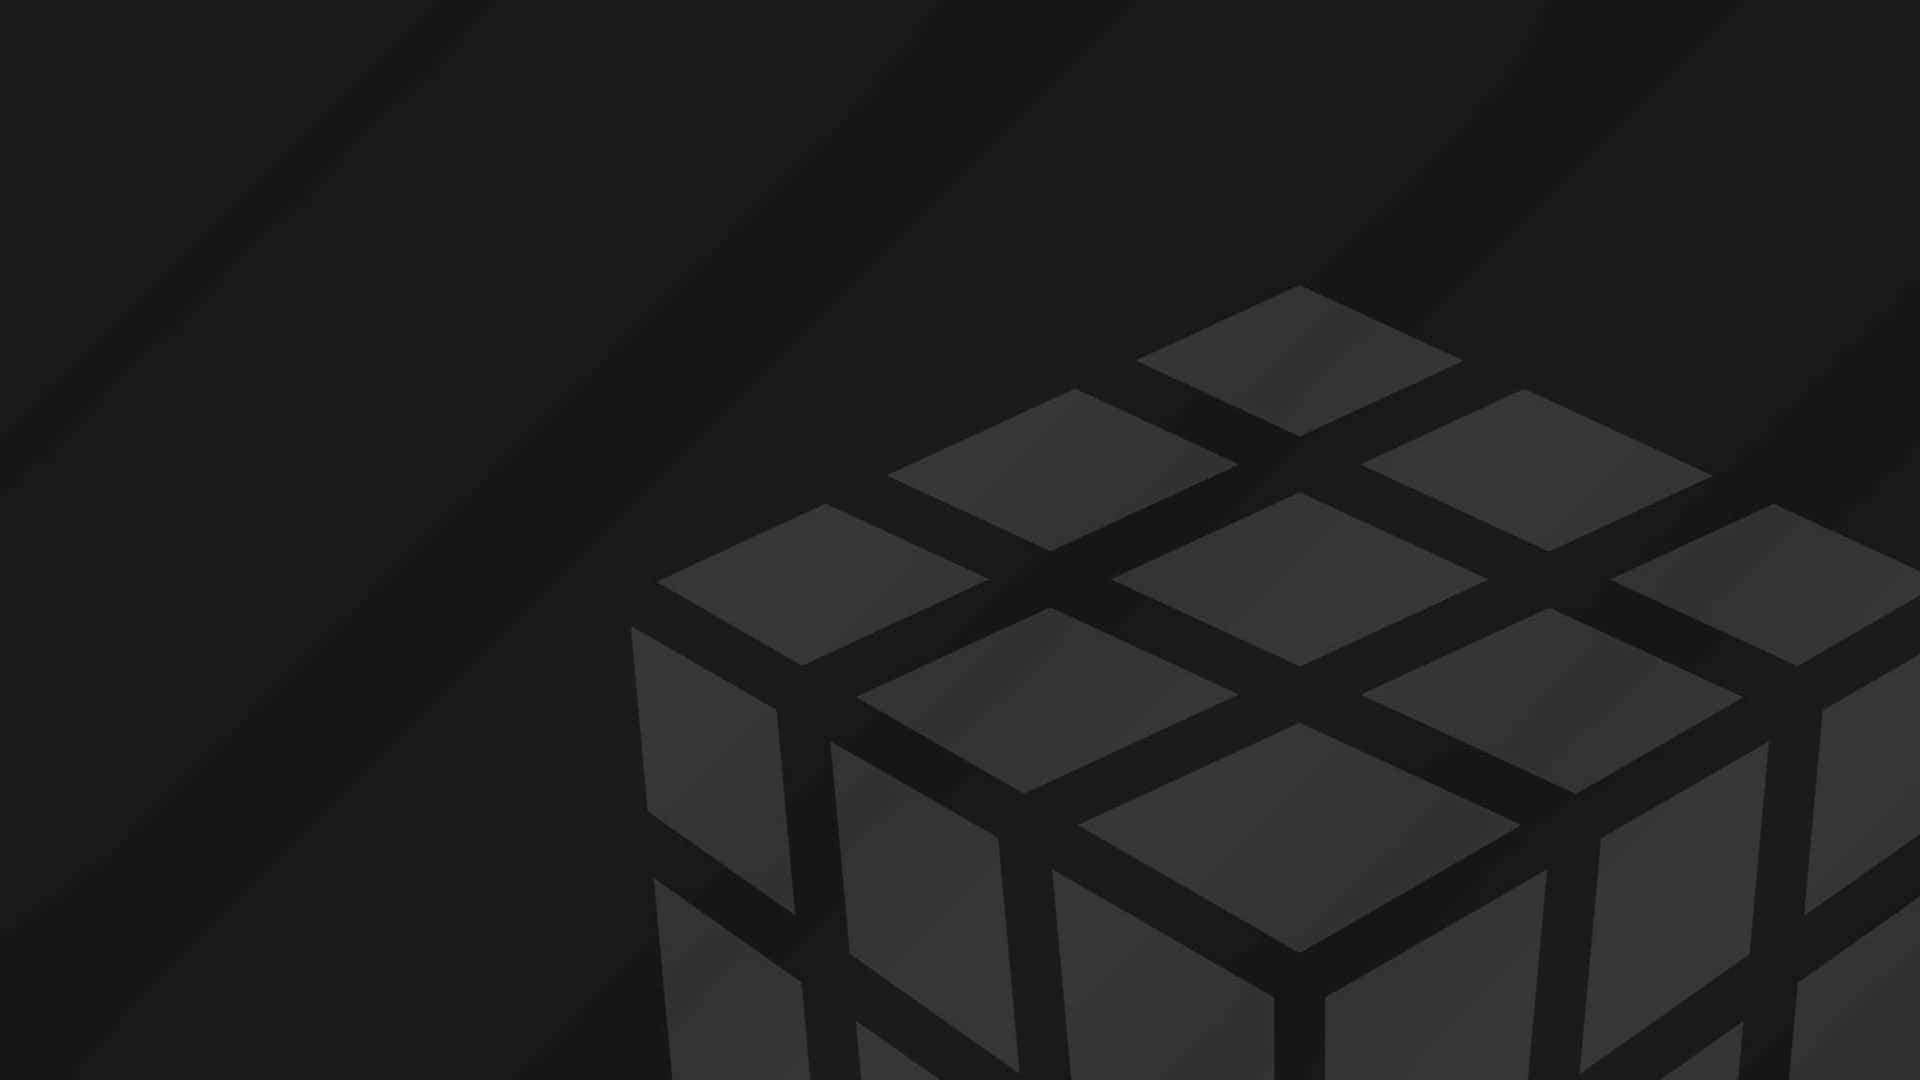 Monochrome Rubiks Cubeon Dark Background Wallpaper